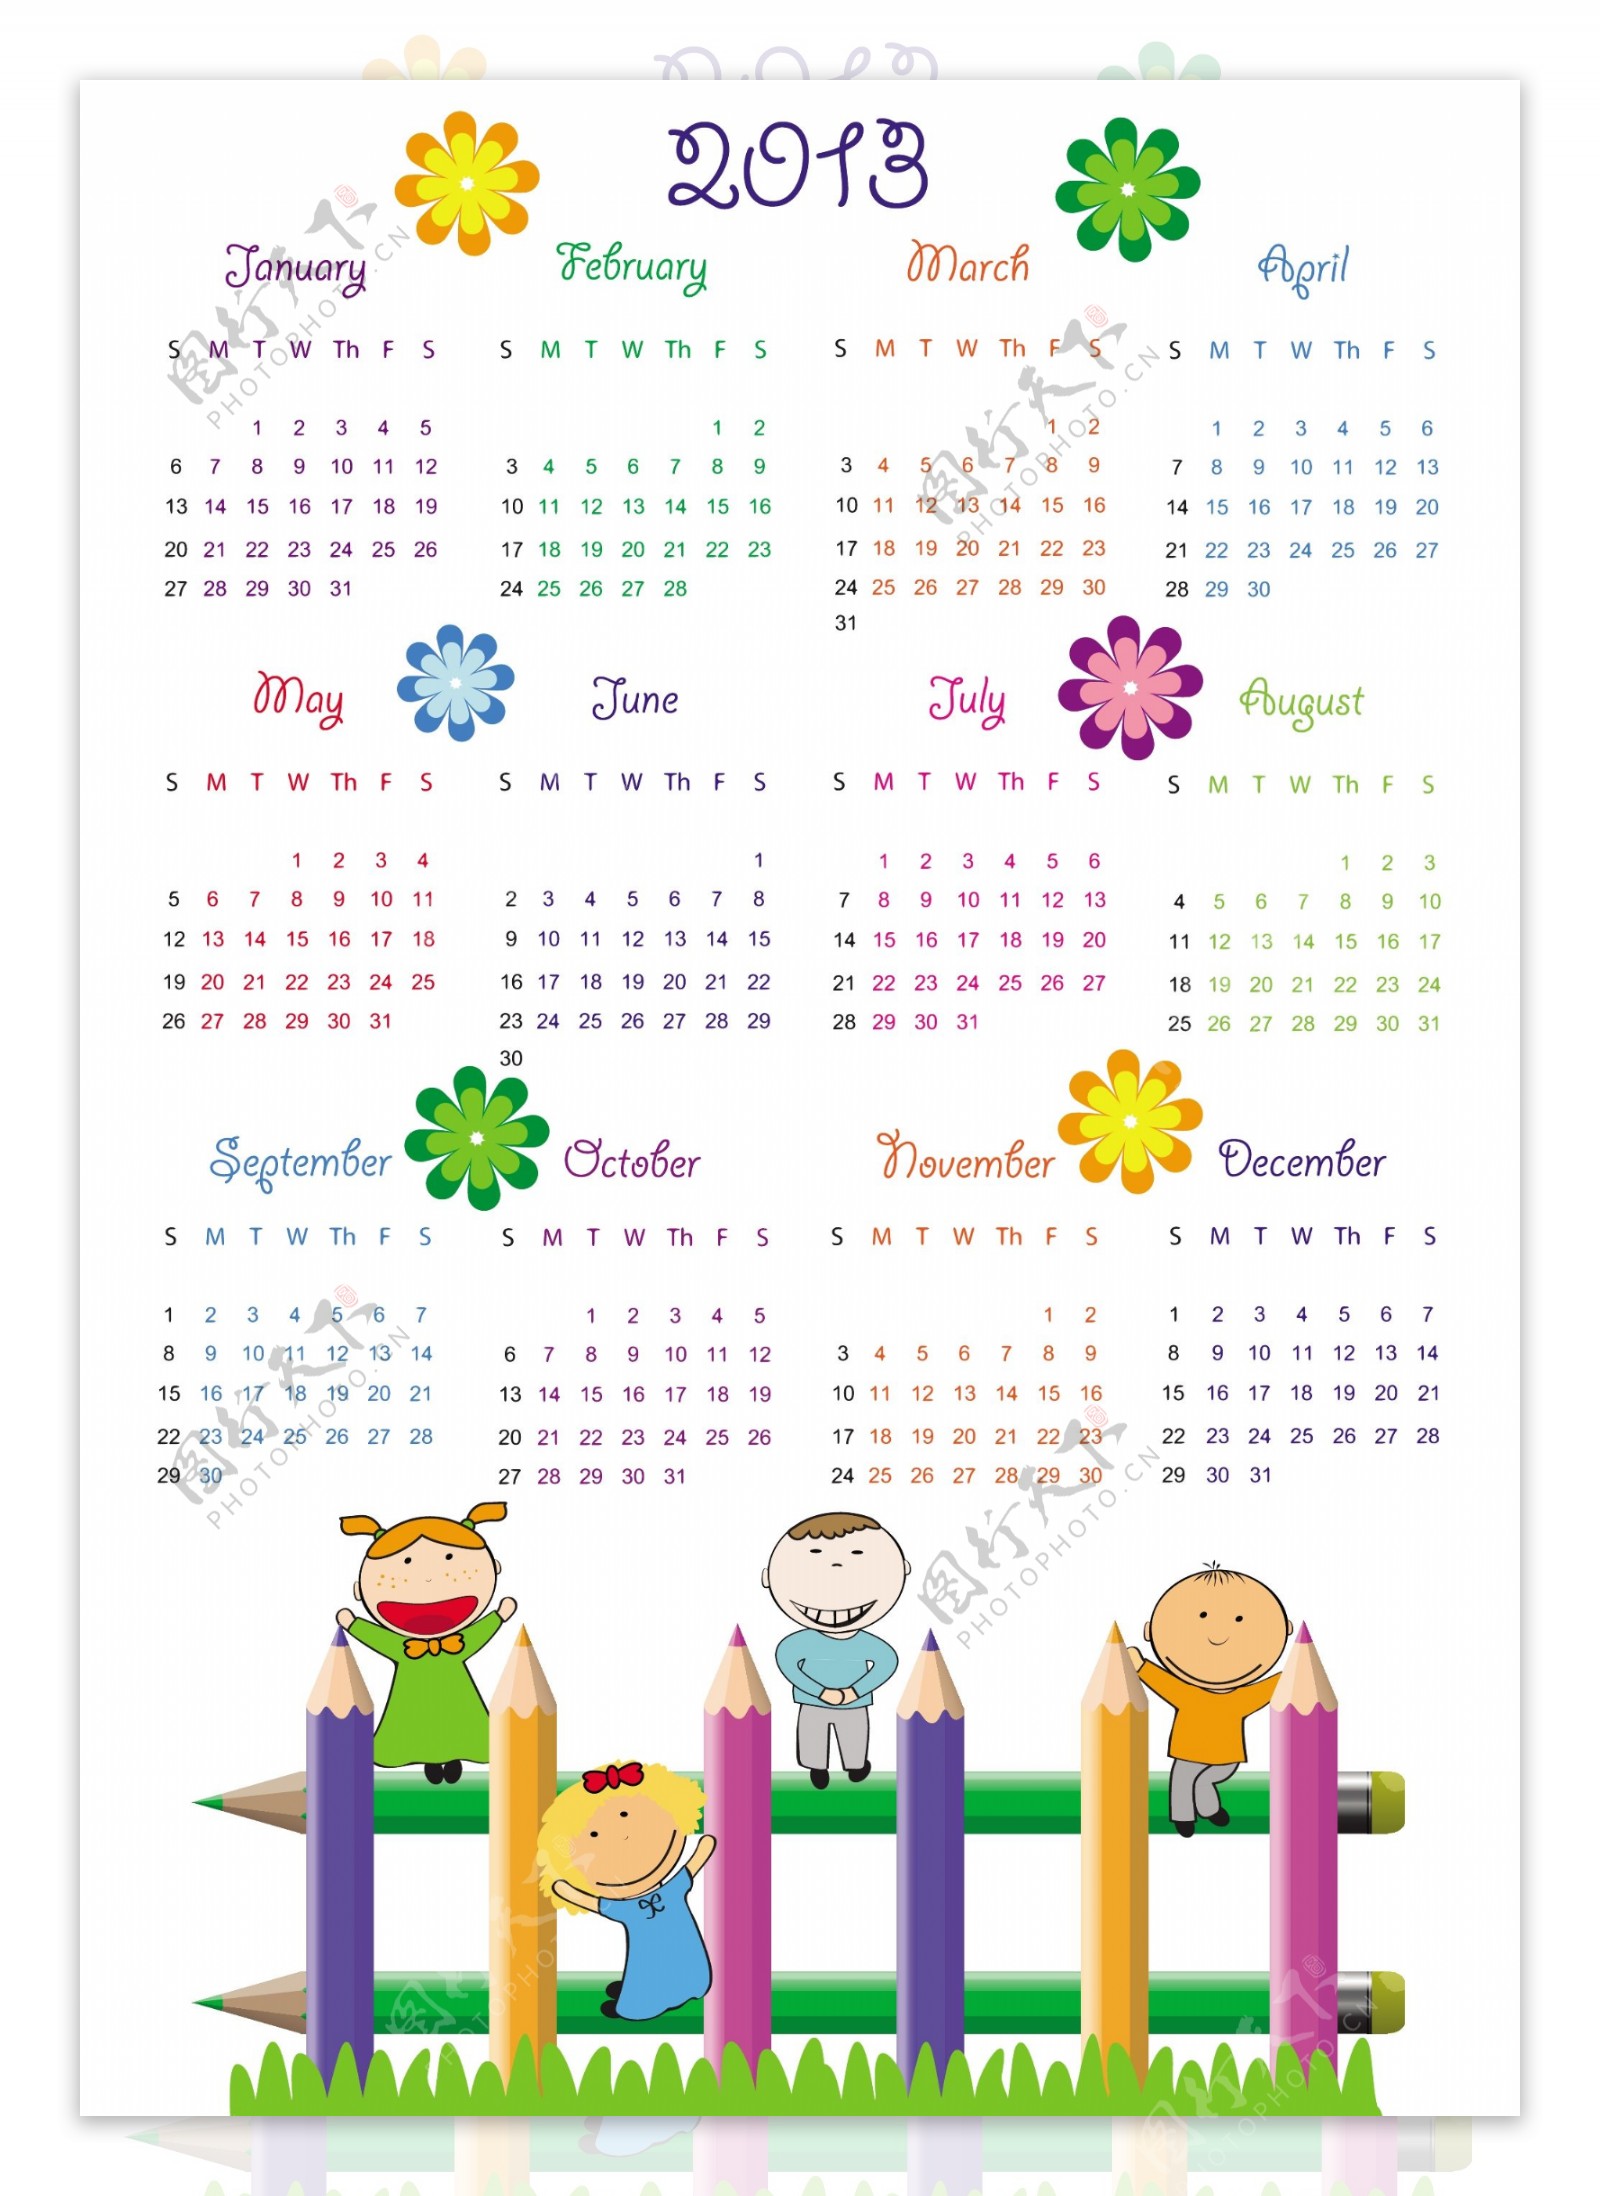 2013儿童年历模板矢量图